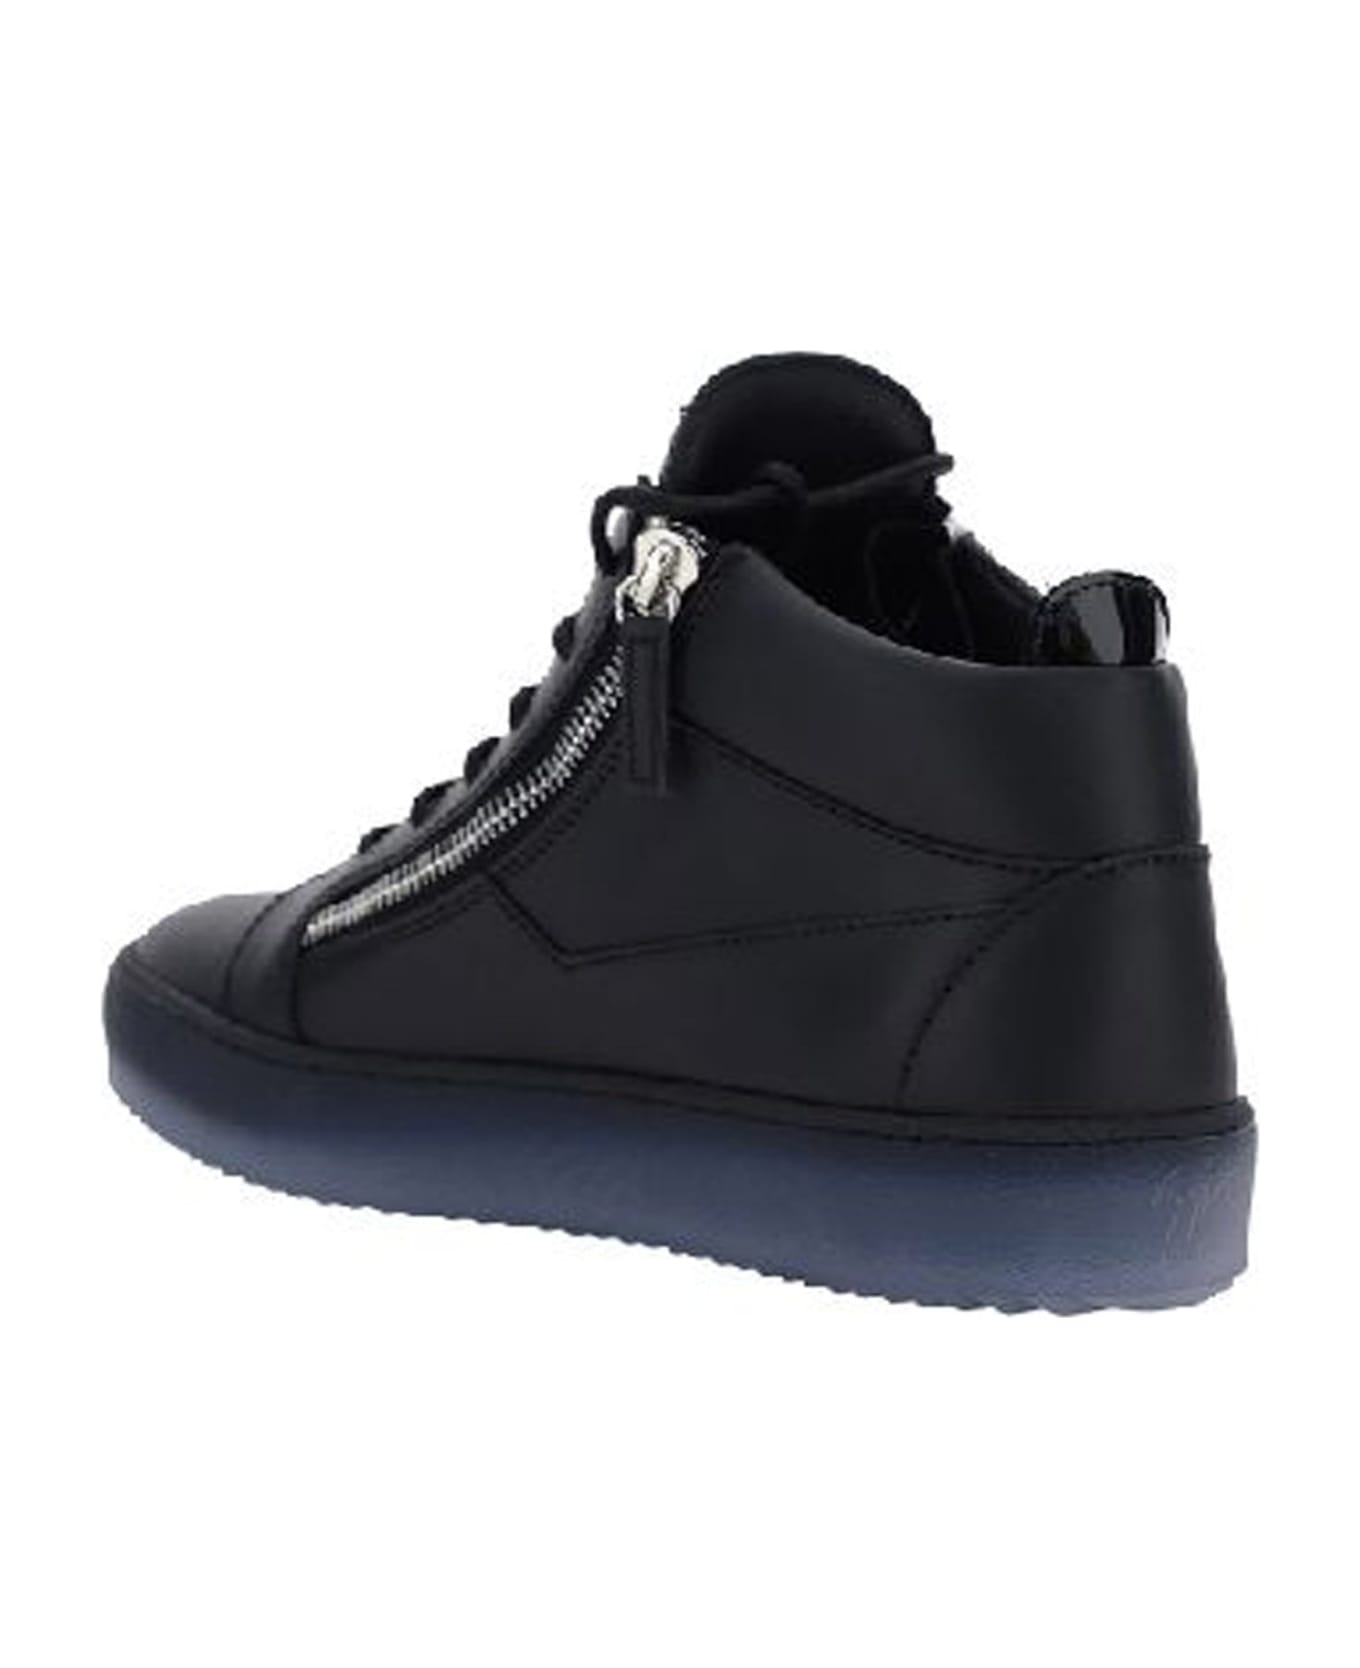 Giuseppe Zanotti Leather Sneakers - Black スニーカー